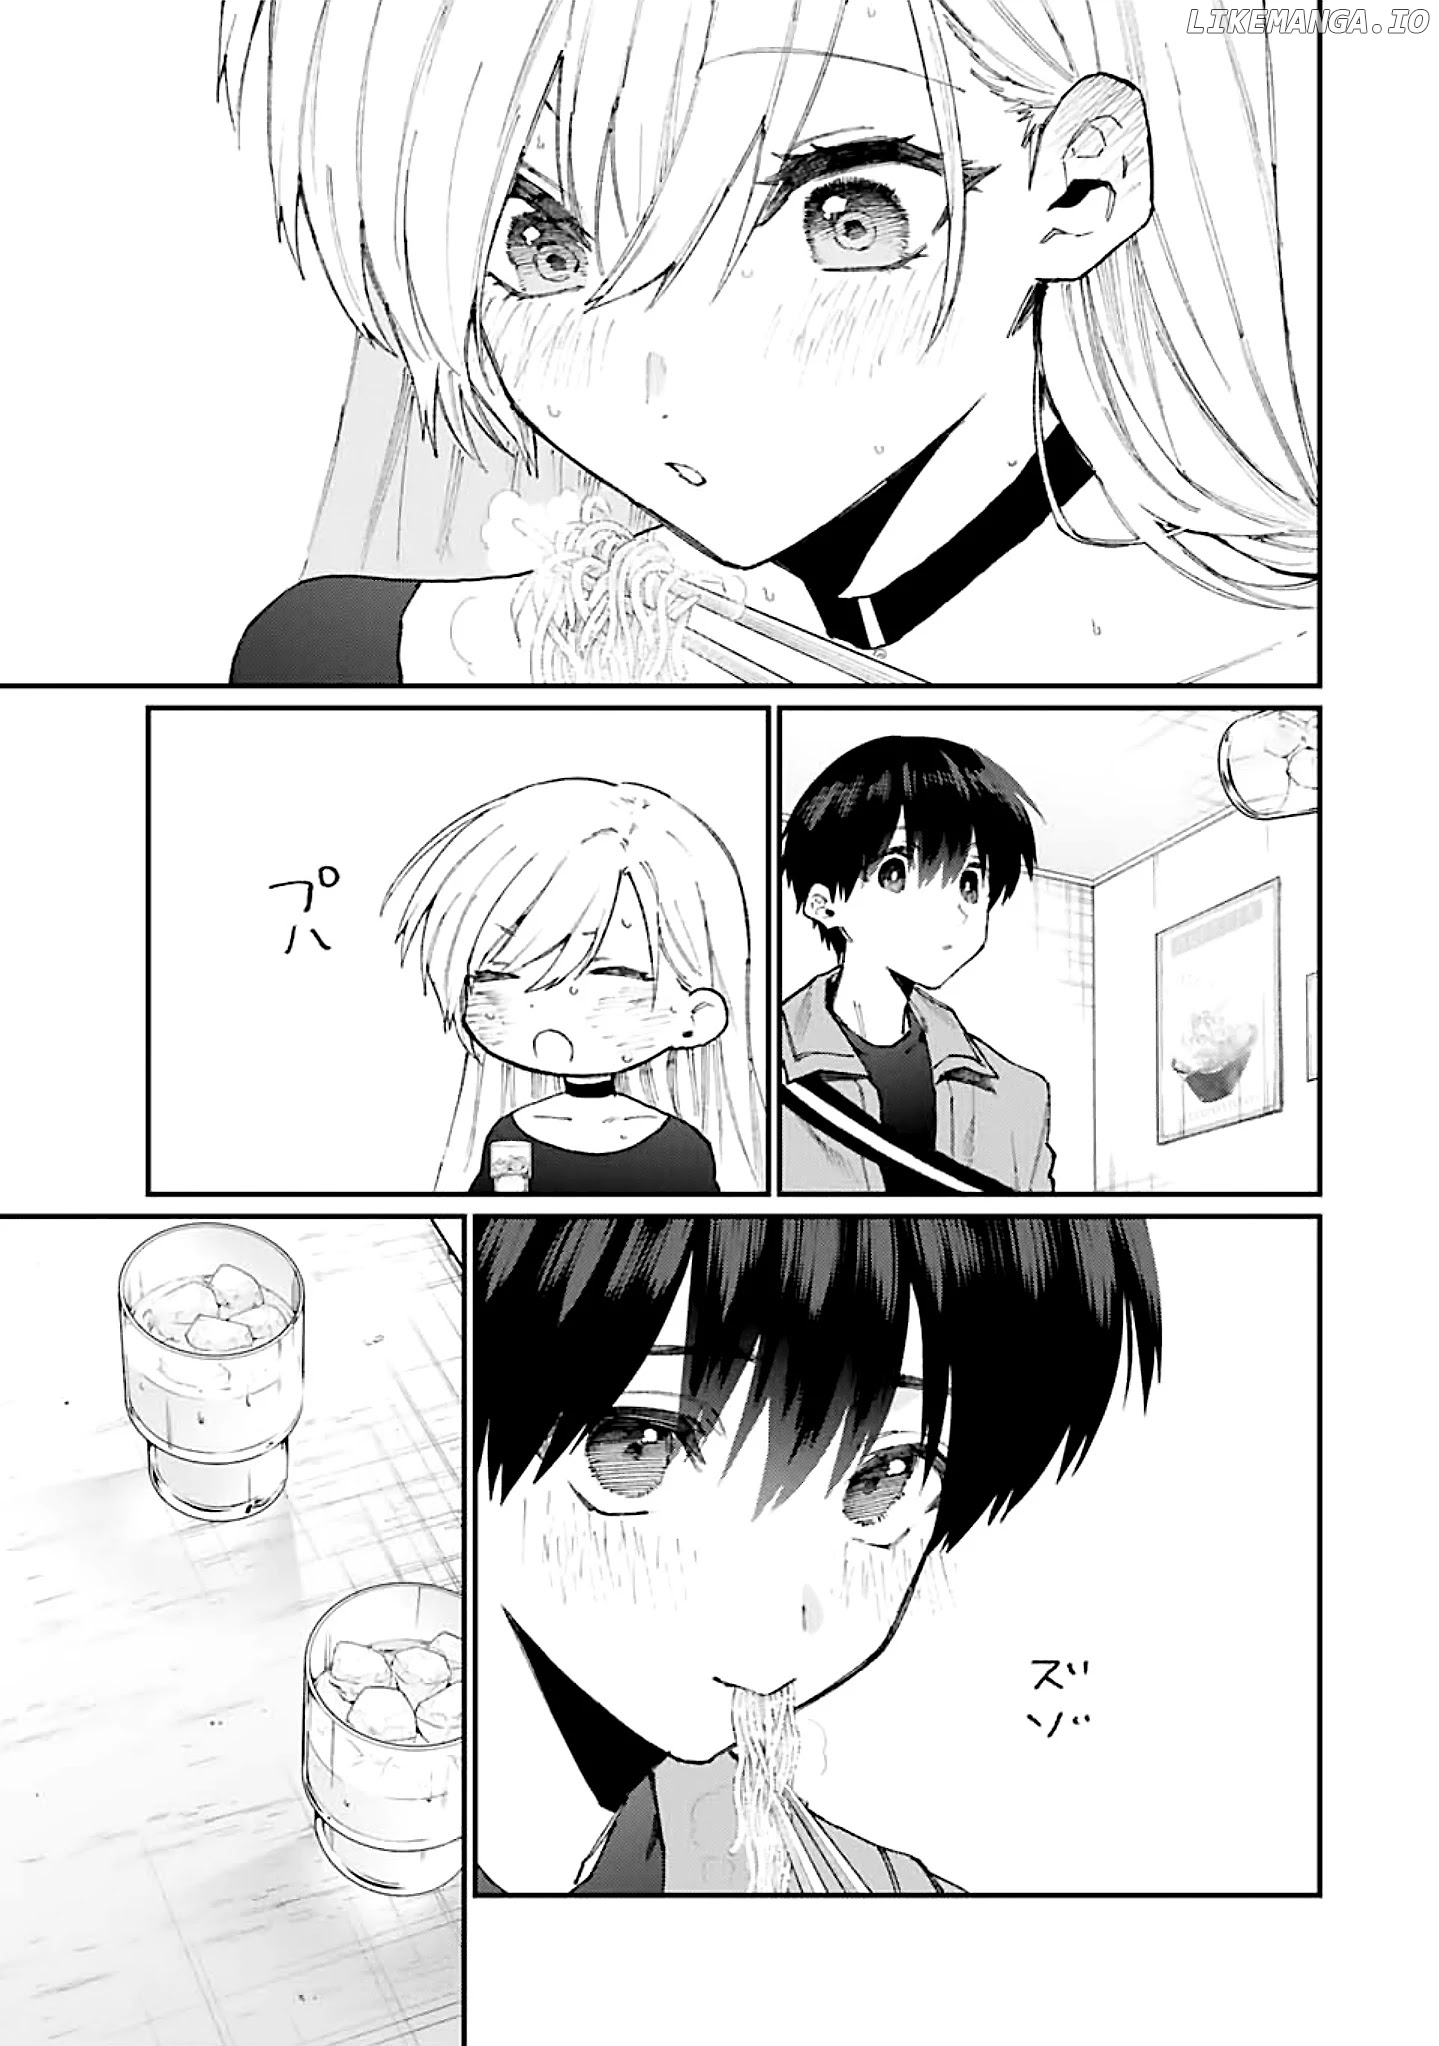 Shikimori's Not Just A Cutie chapter 134 - page 10